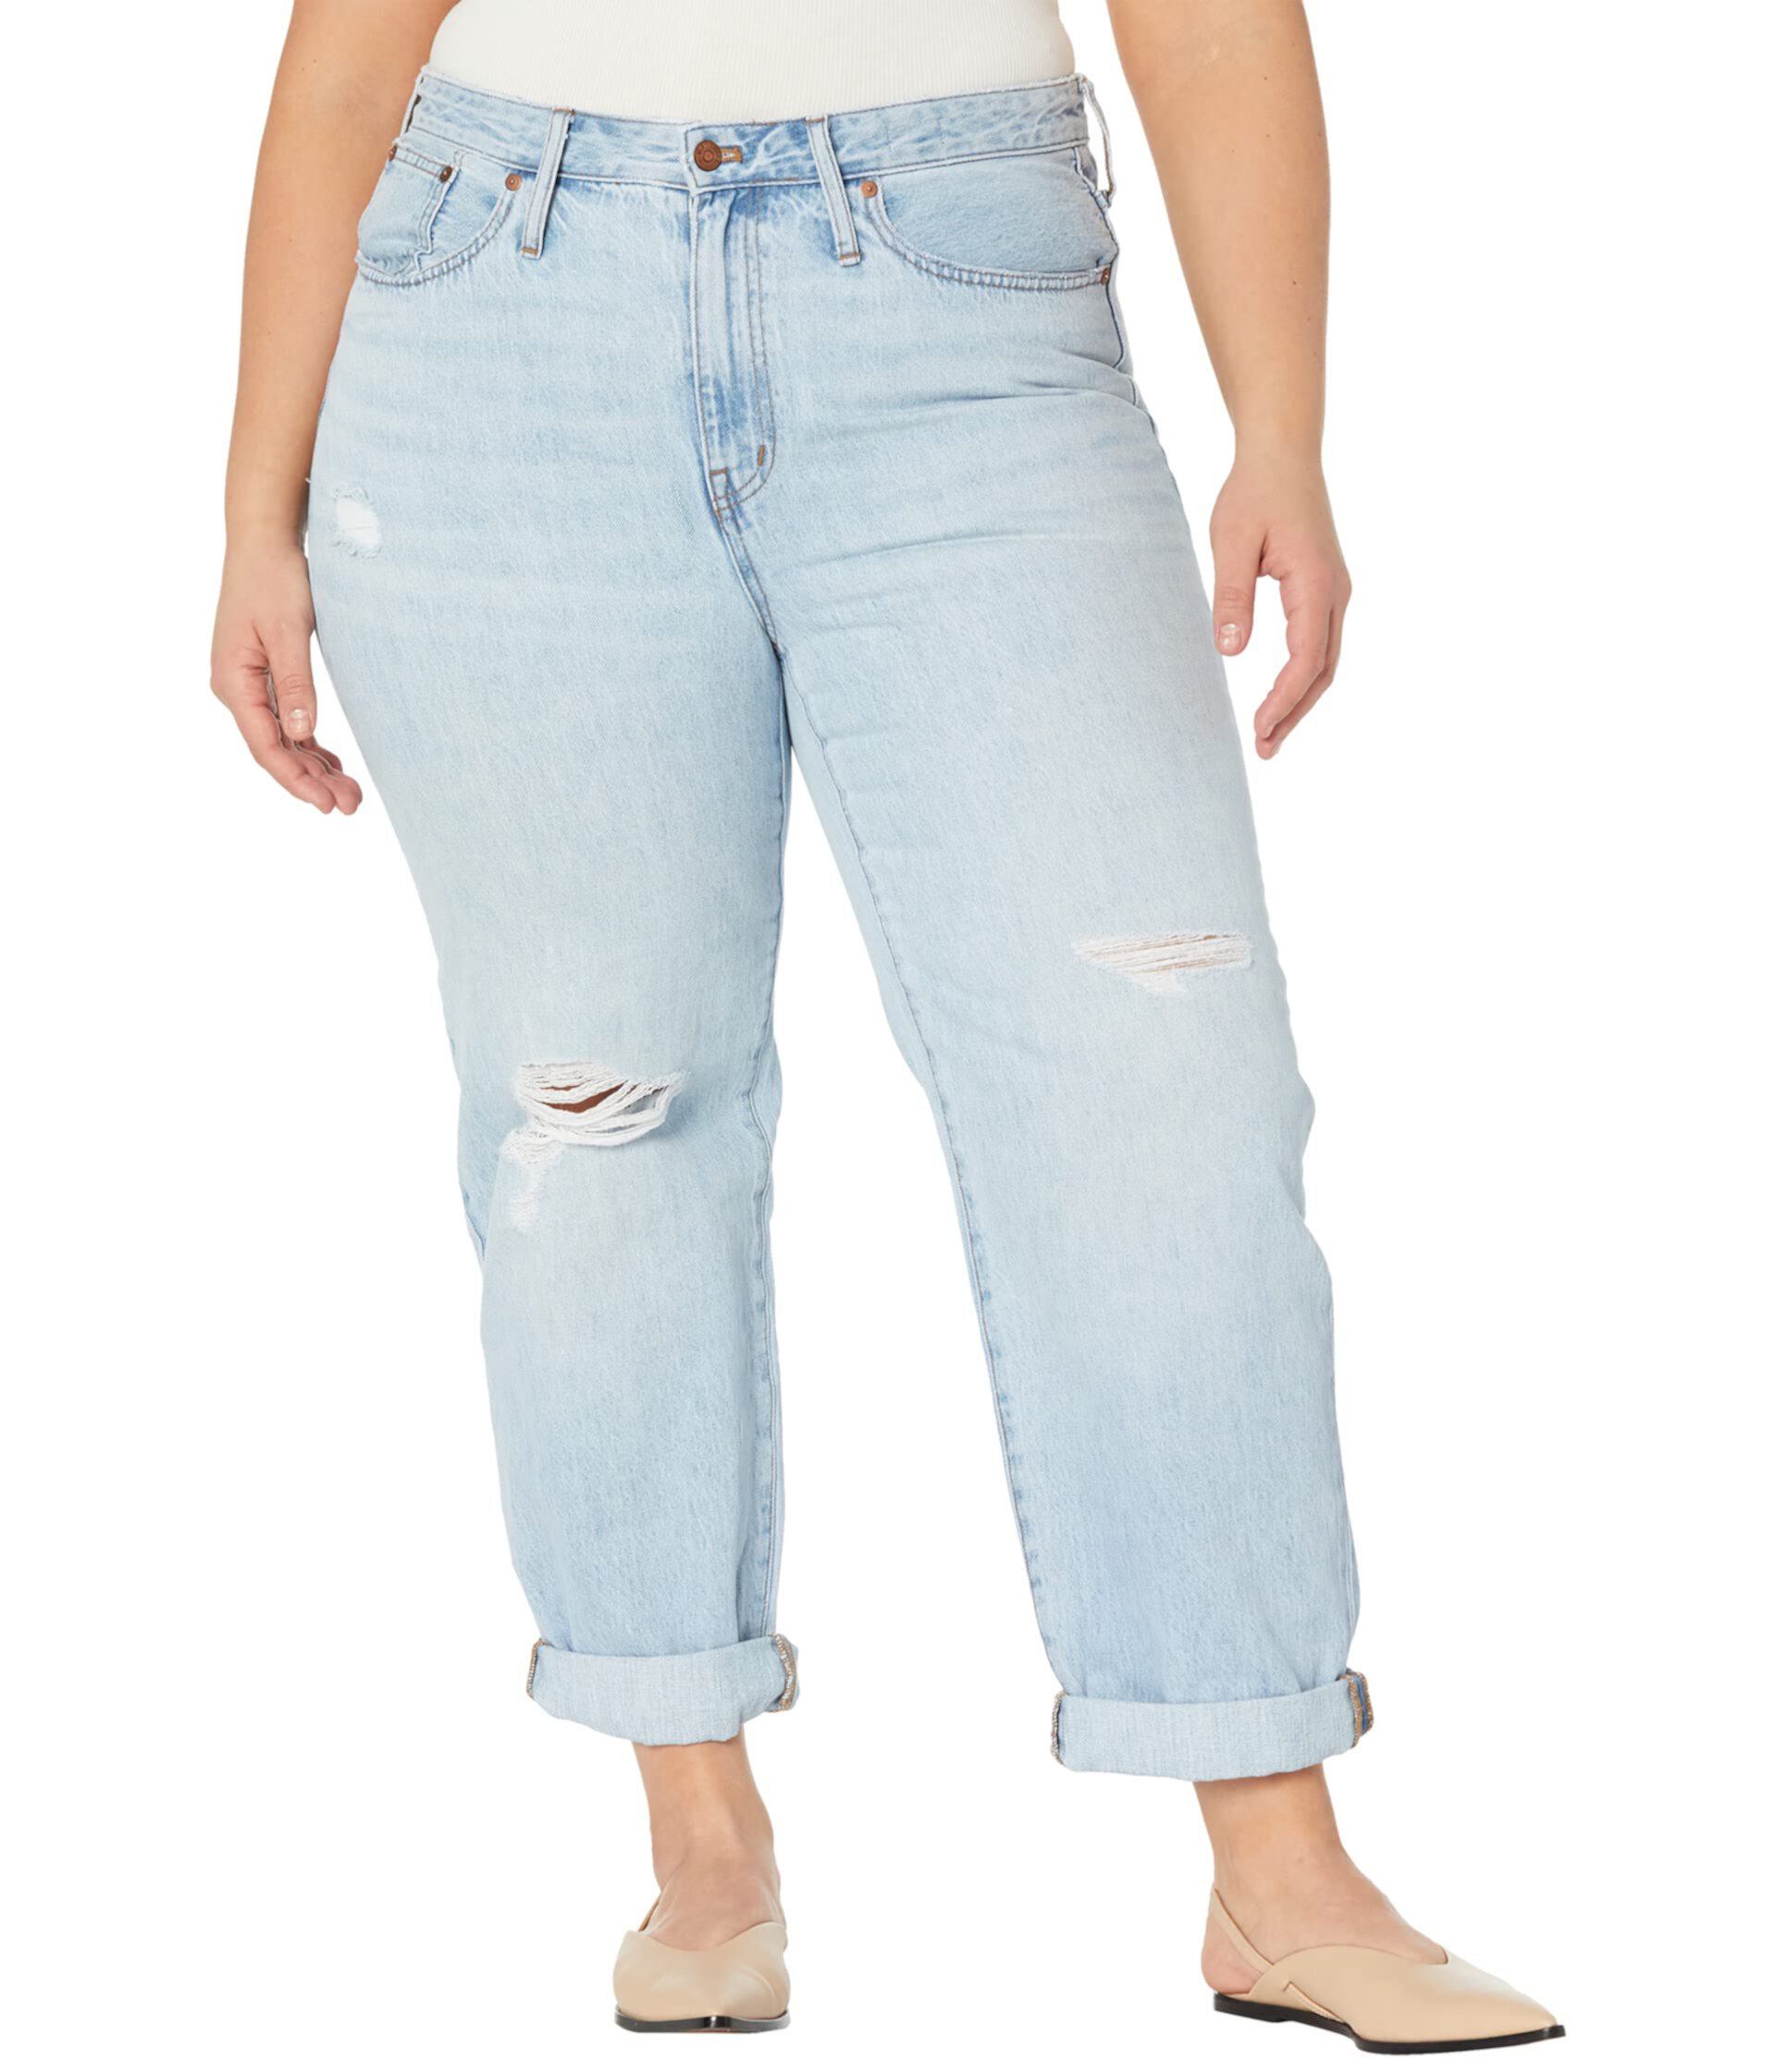 Плюс свободные джинсы в цвете Cresthaven Wash: Ripped Edition Madewell